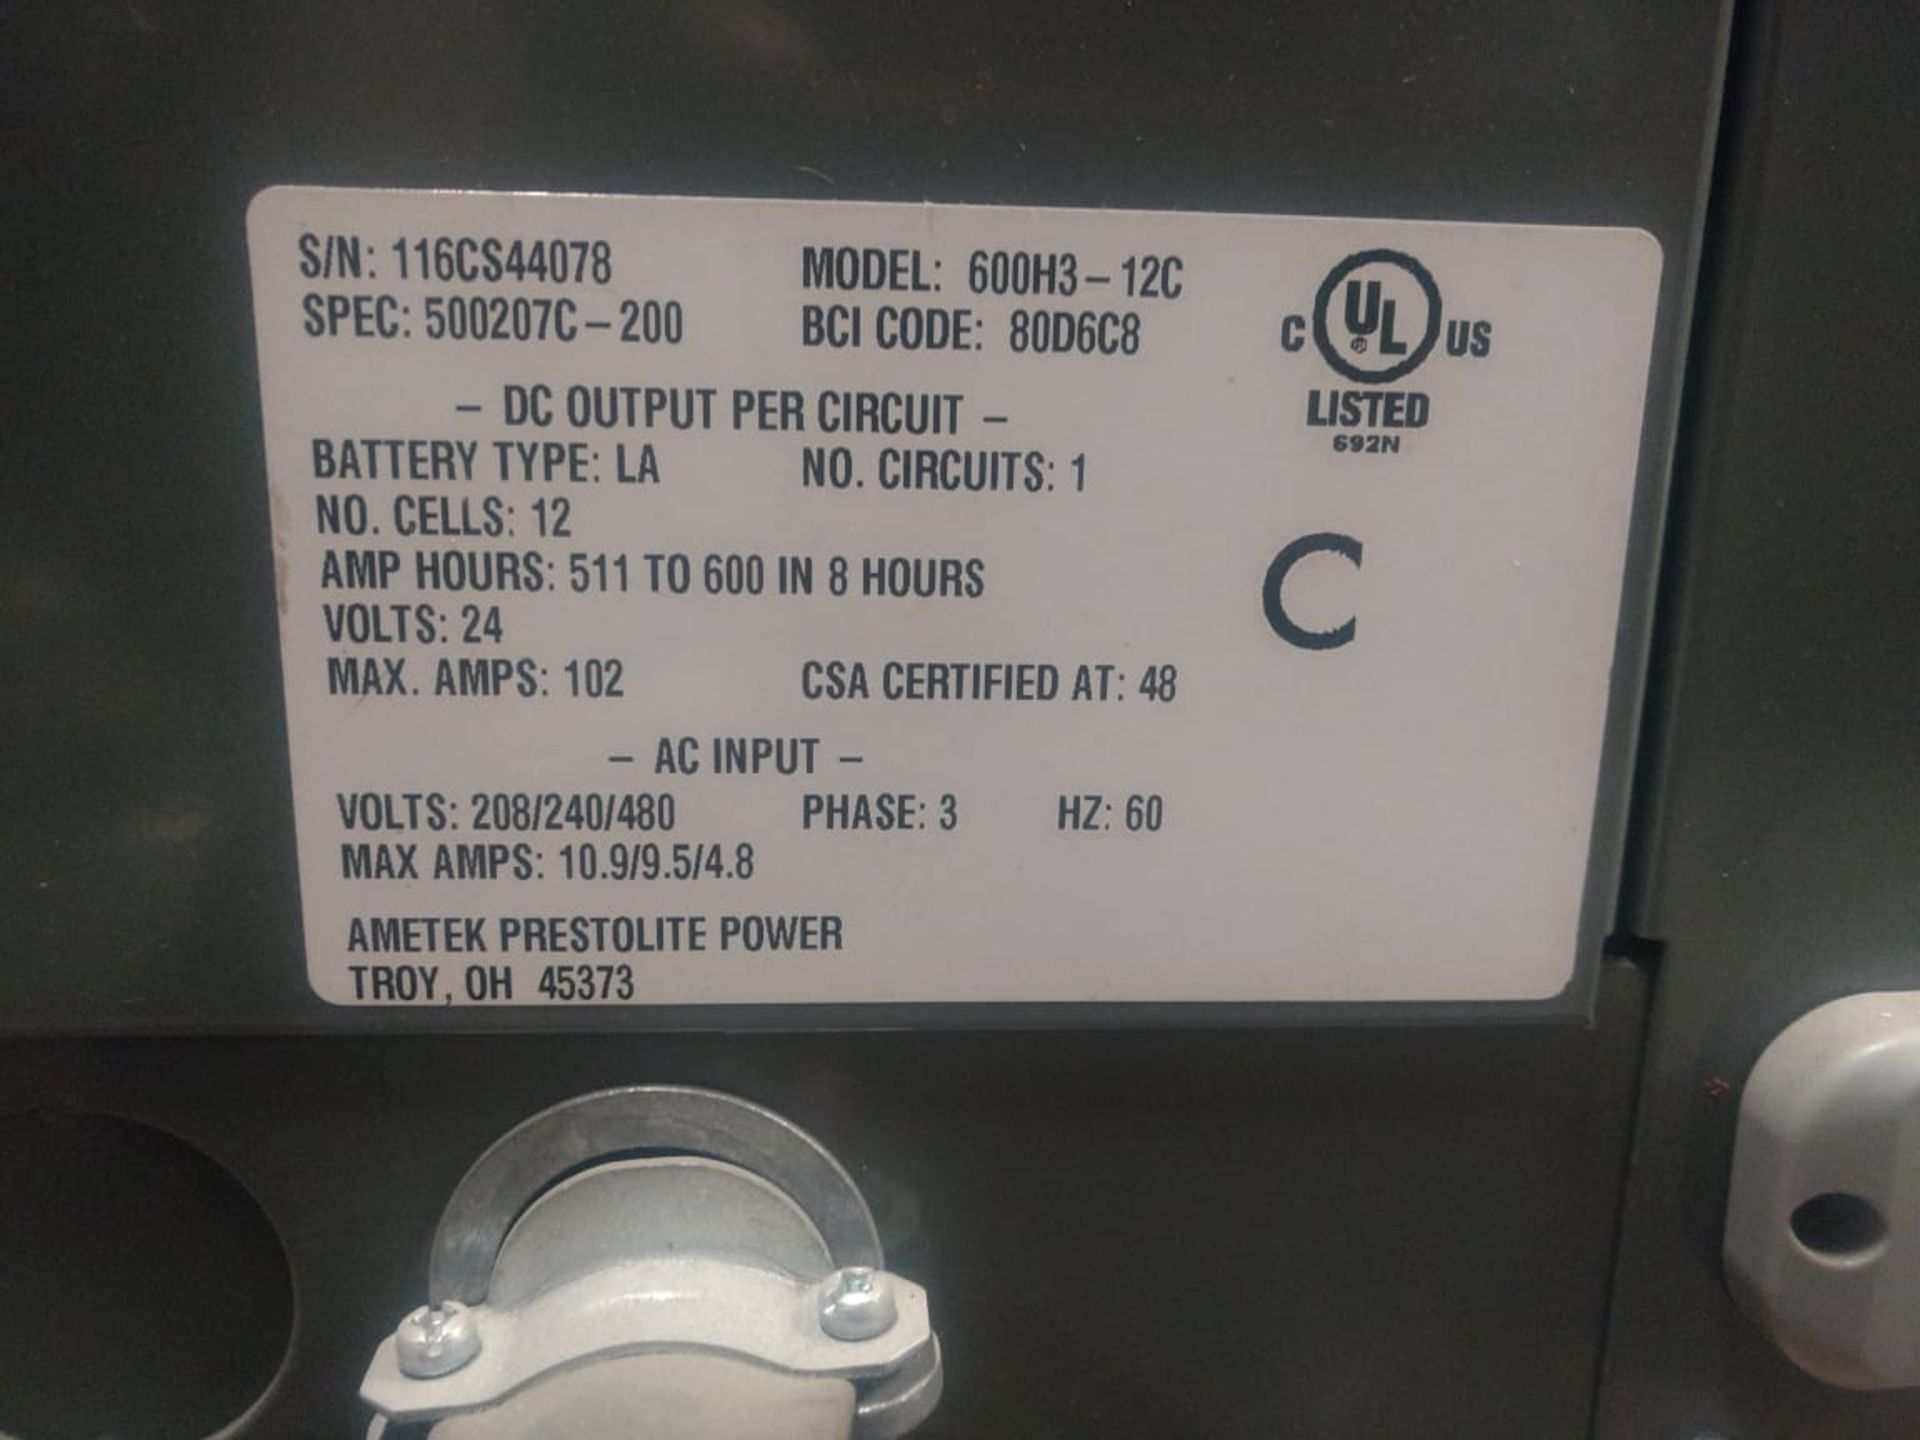 2 Ametek battery chargers, model 6083-12C, input 208/240/480 V, output 24V. - Image 12 of 12